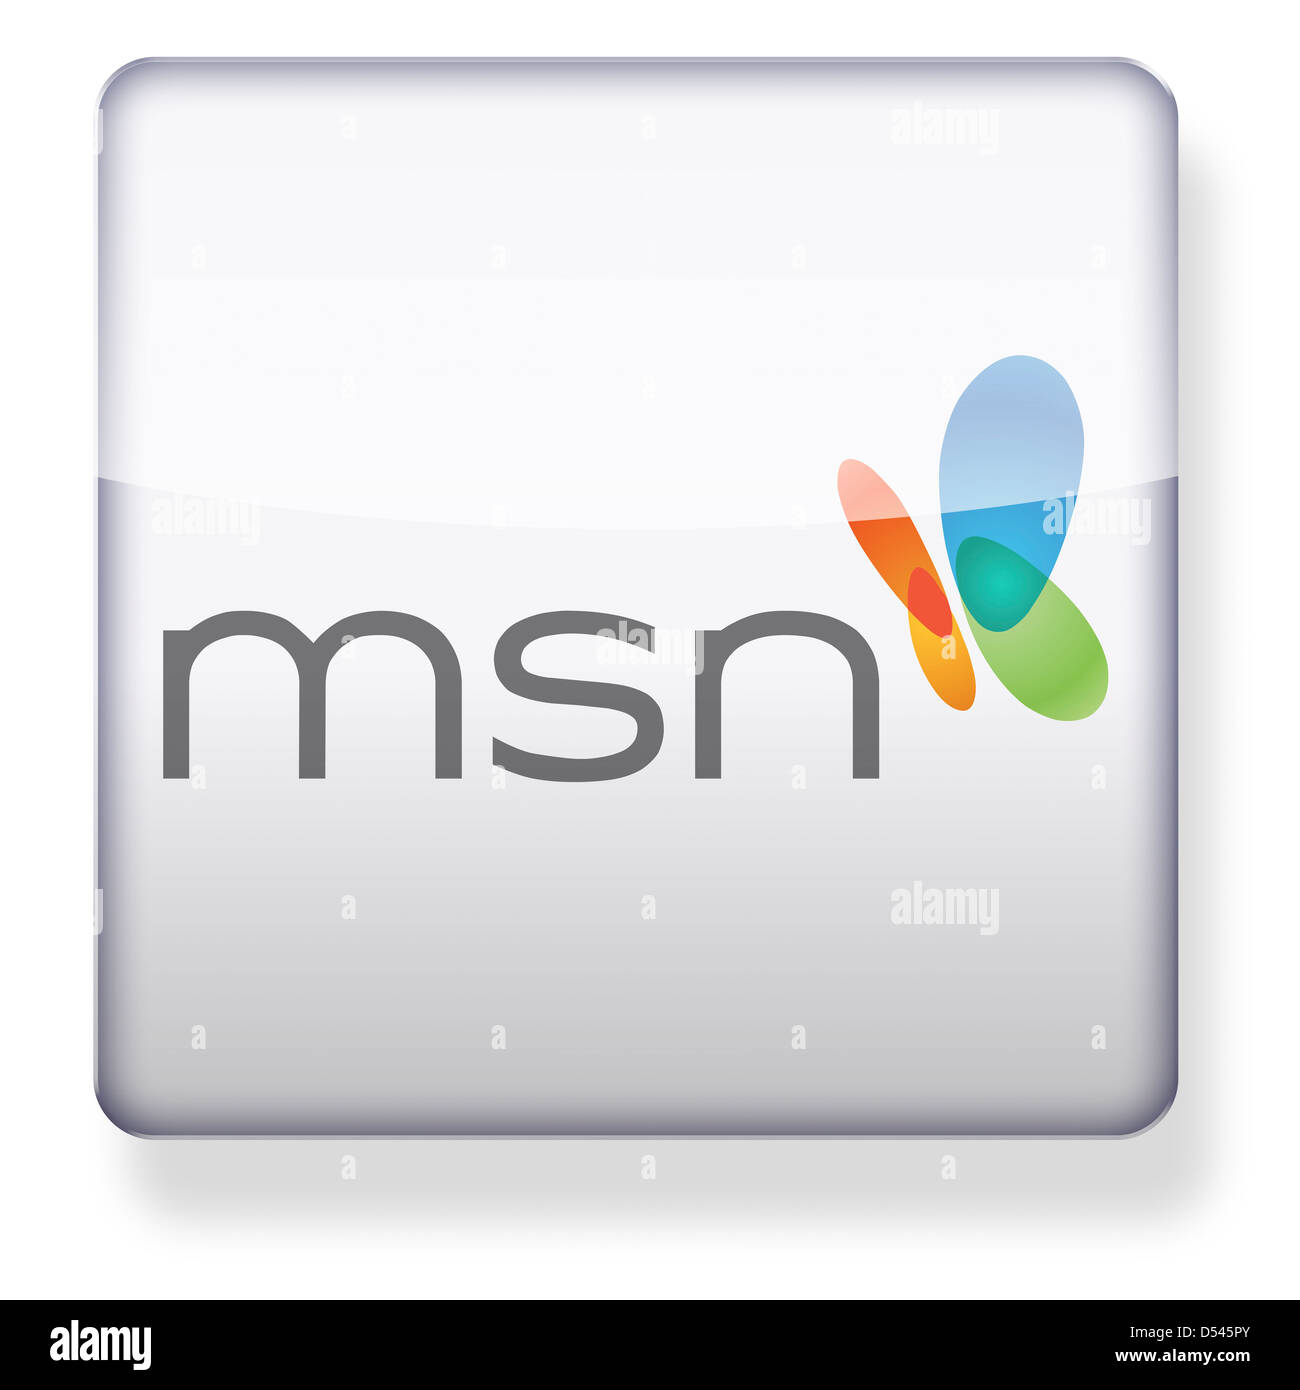 Msn logo immagini e fotografie stock ad alta risoluzione - Alamy